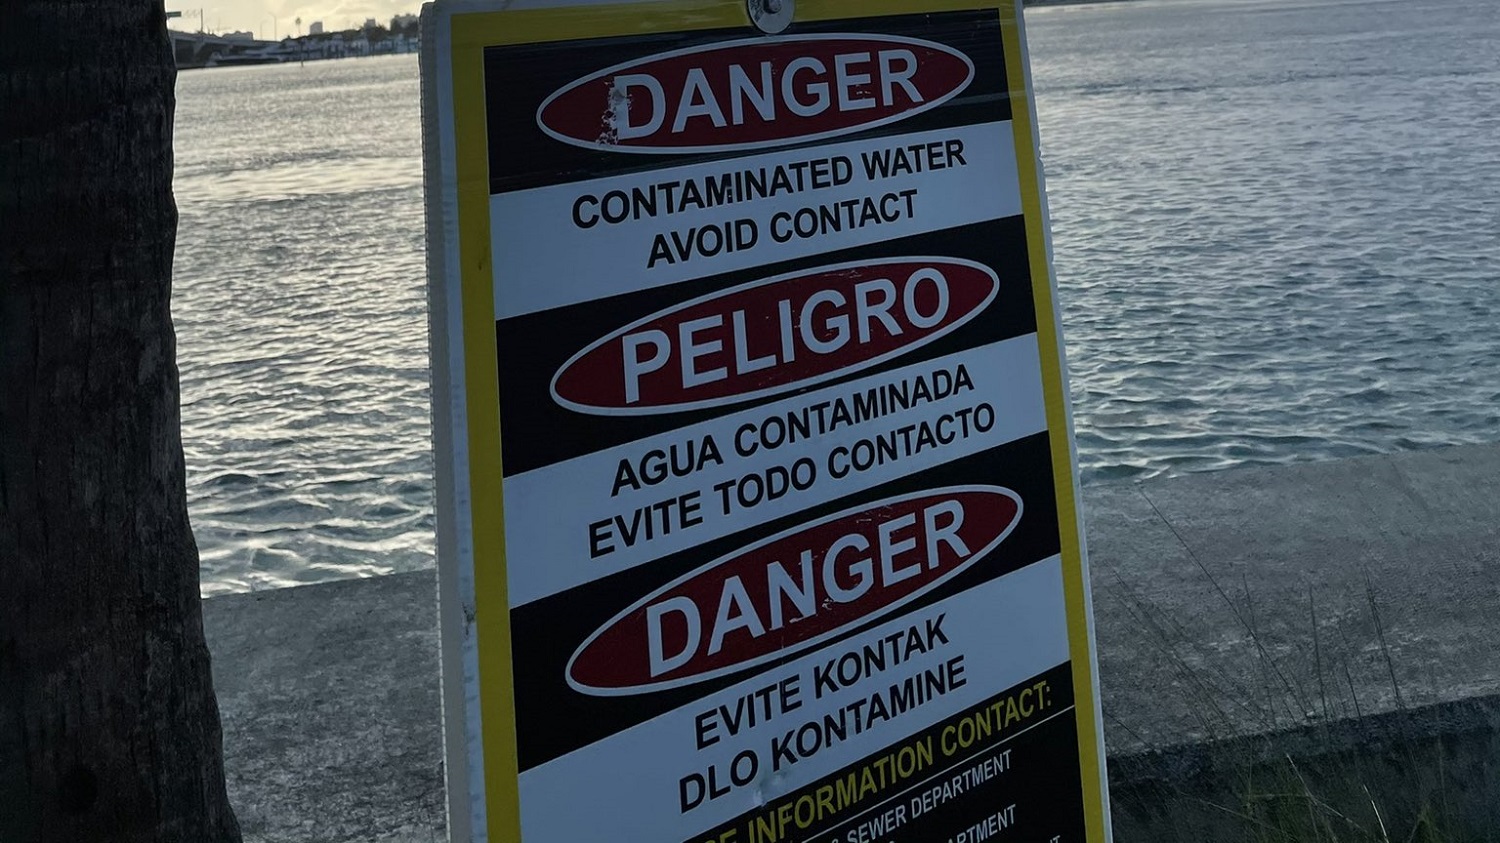 Prohíben nadar en área de la bahía de Miami por derrame de aguas residuales (fotos)